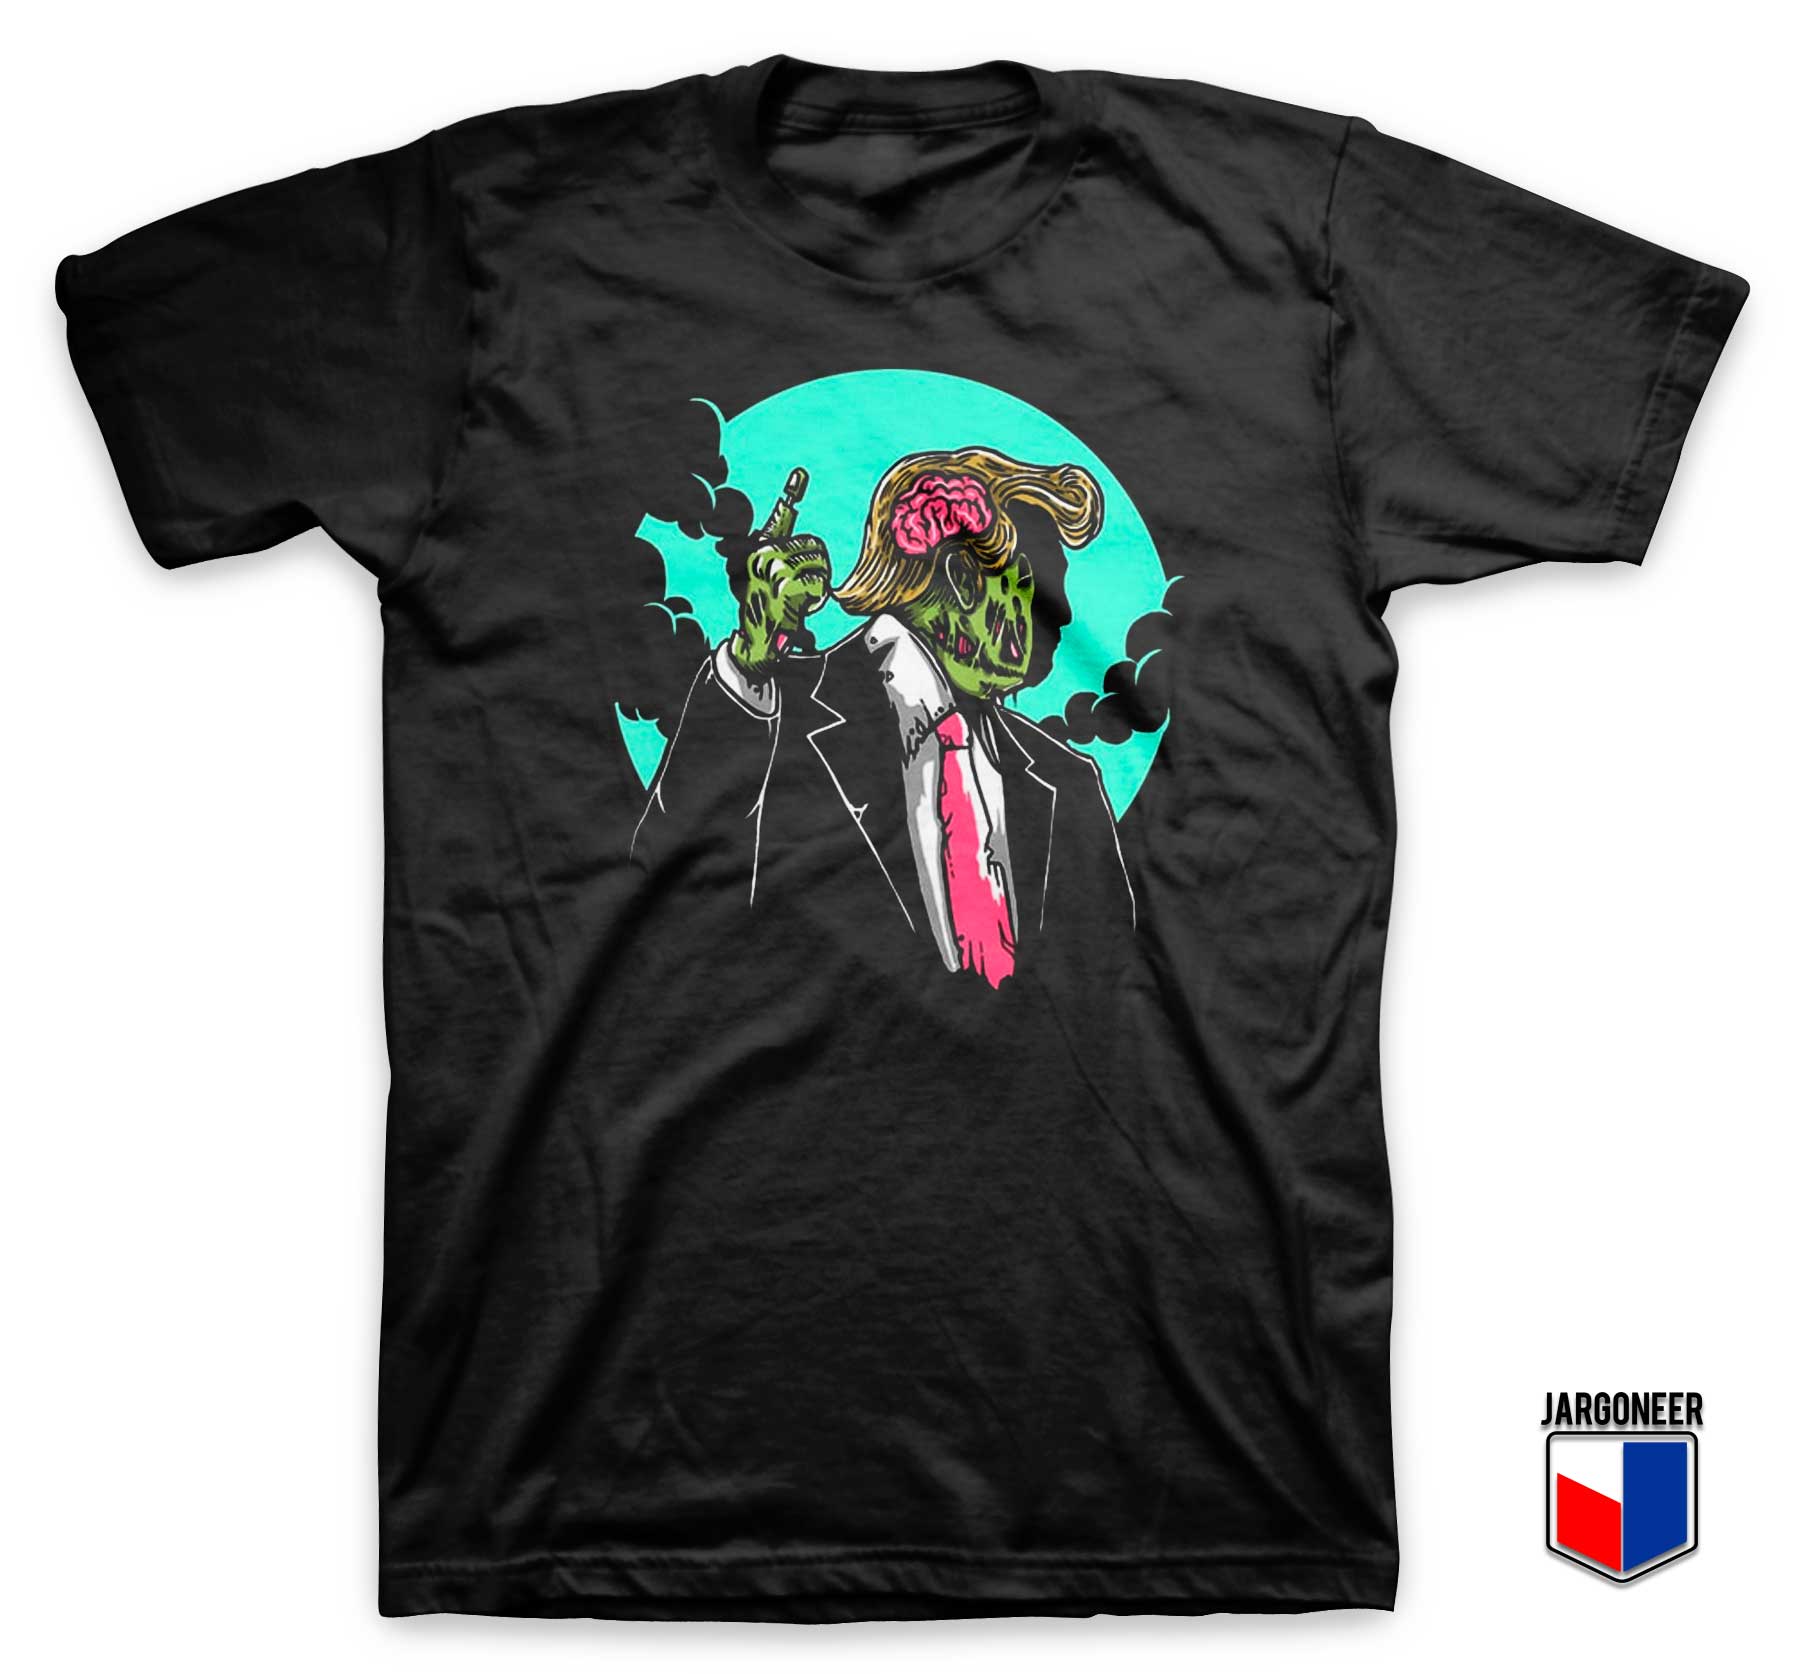 Make Zombie Great Again T Shirt - Shop Unique Graphic Cool Shirt Designs